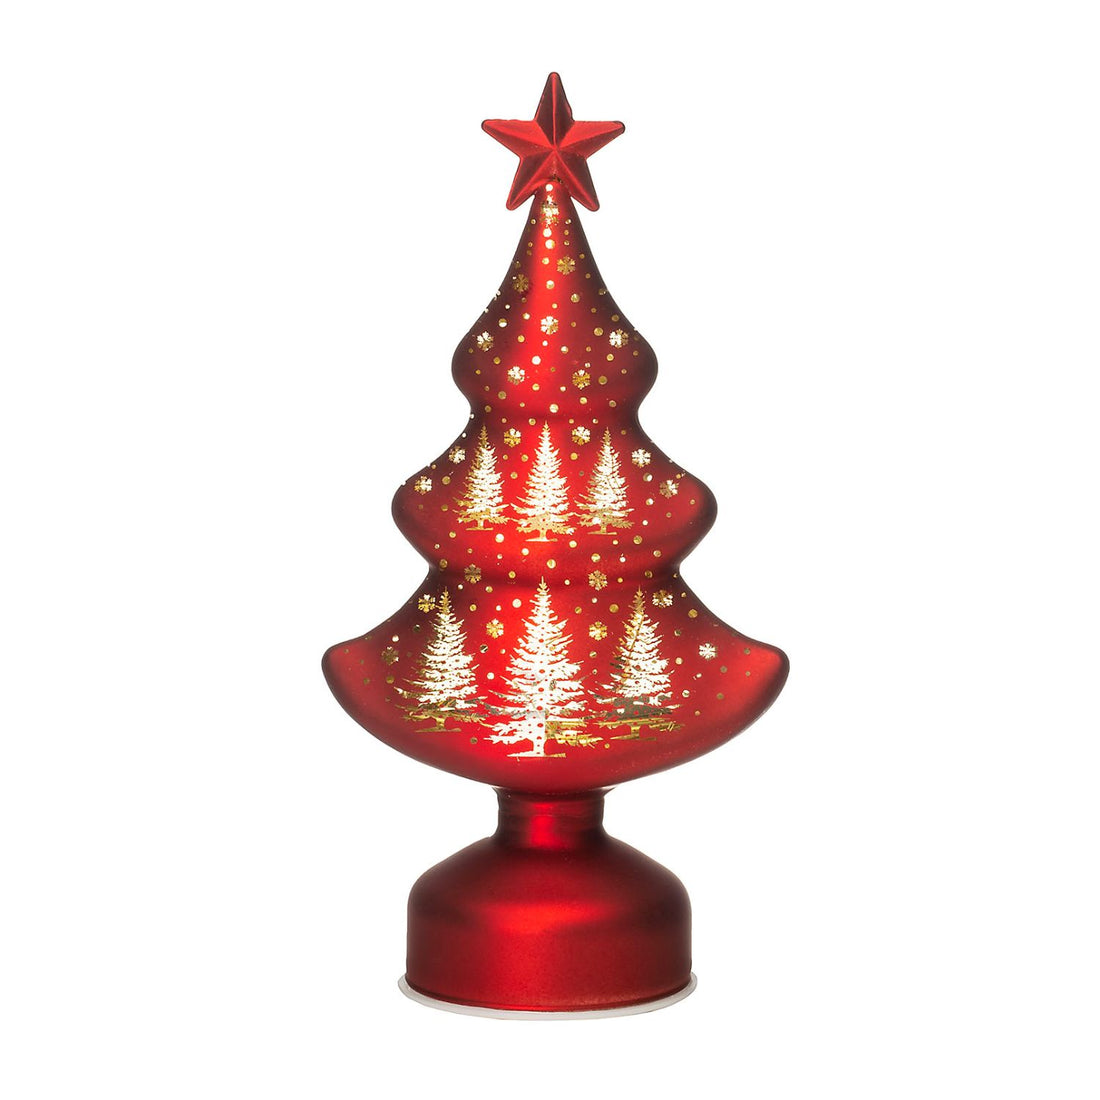 NOEL by Lamart Albero di Natale in Vetro con LED Decorazione di Natale 23cm Rosso